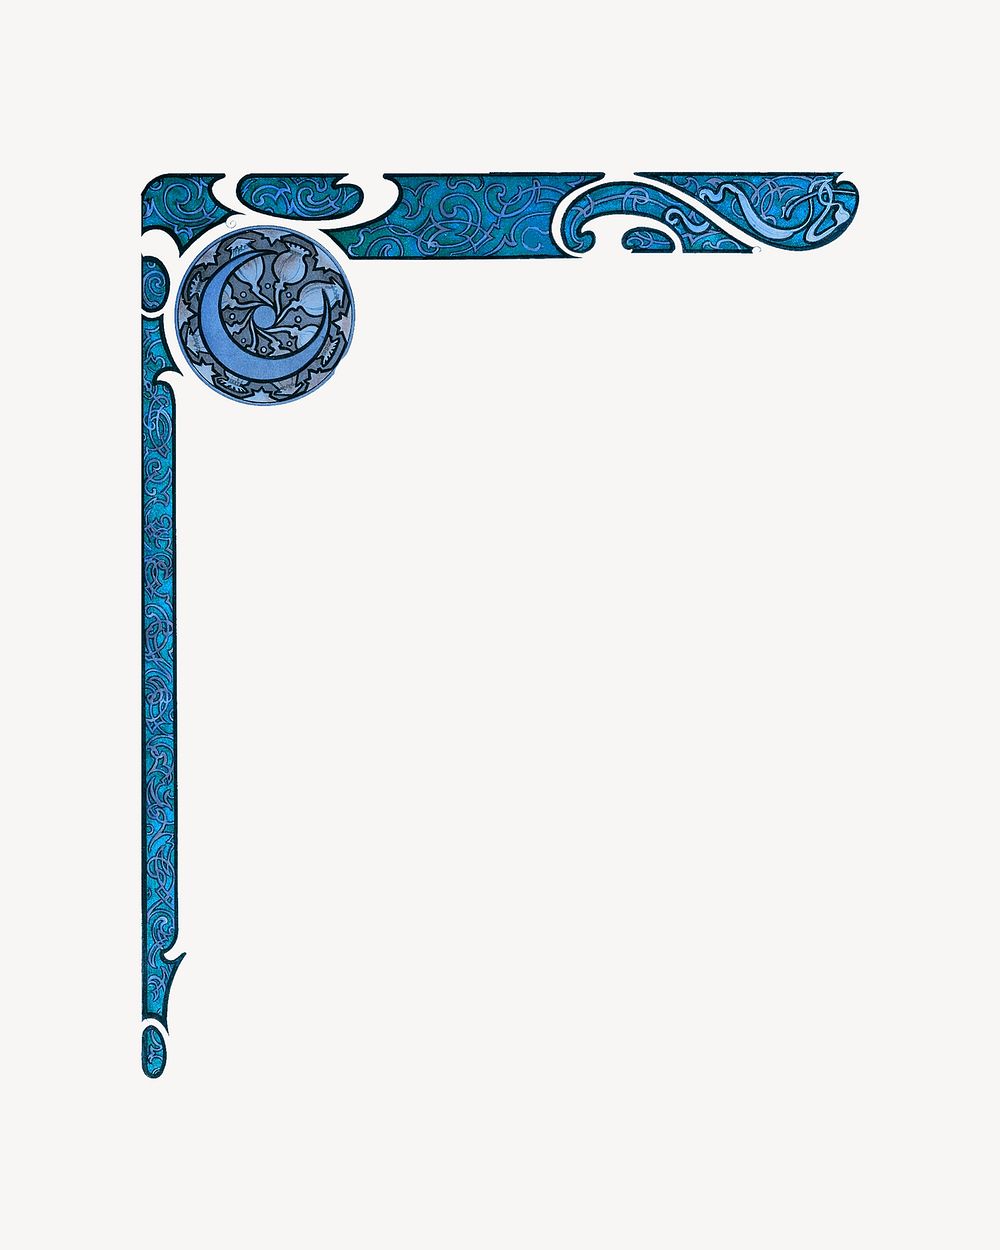 Celestial corner element, blue vintage design